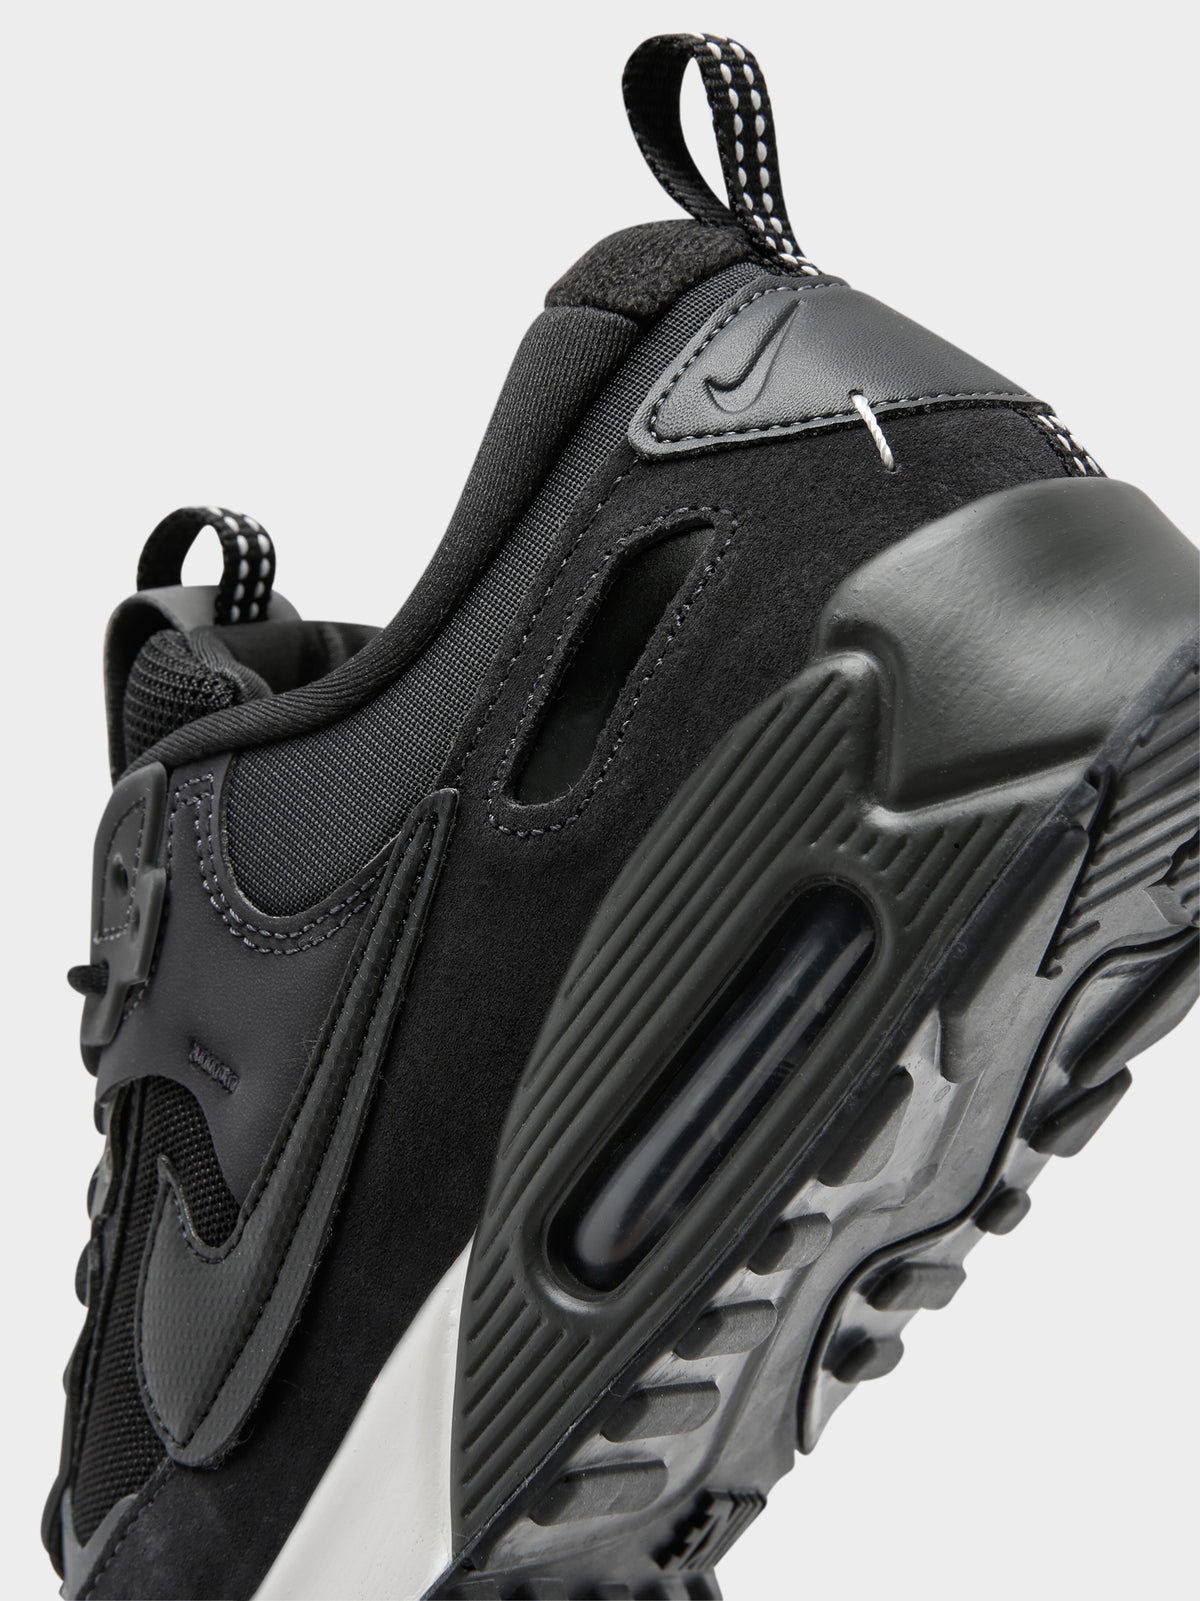 Womens Air Max 90 Futura Sneakers in Black &amp; Grey